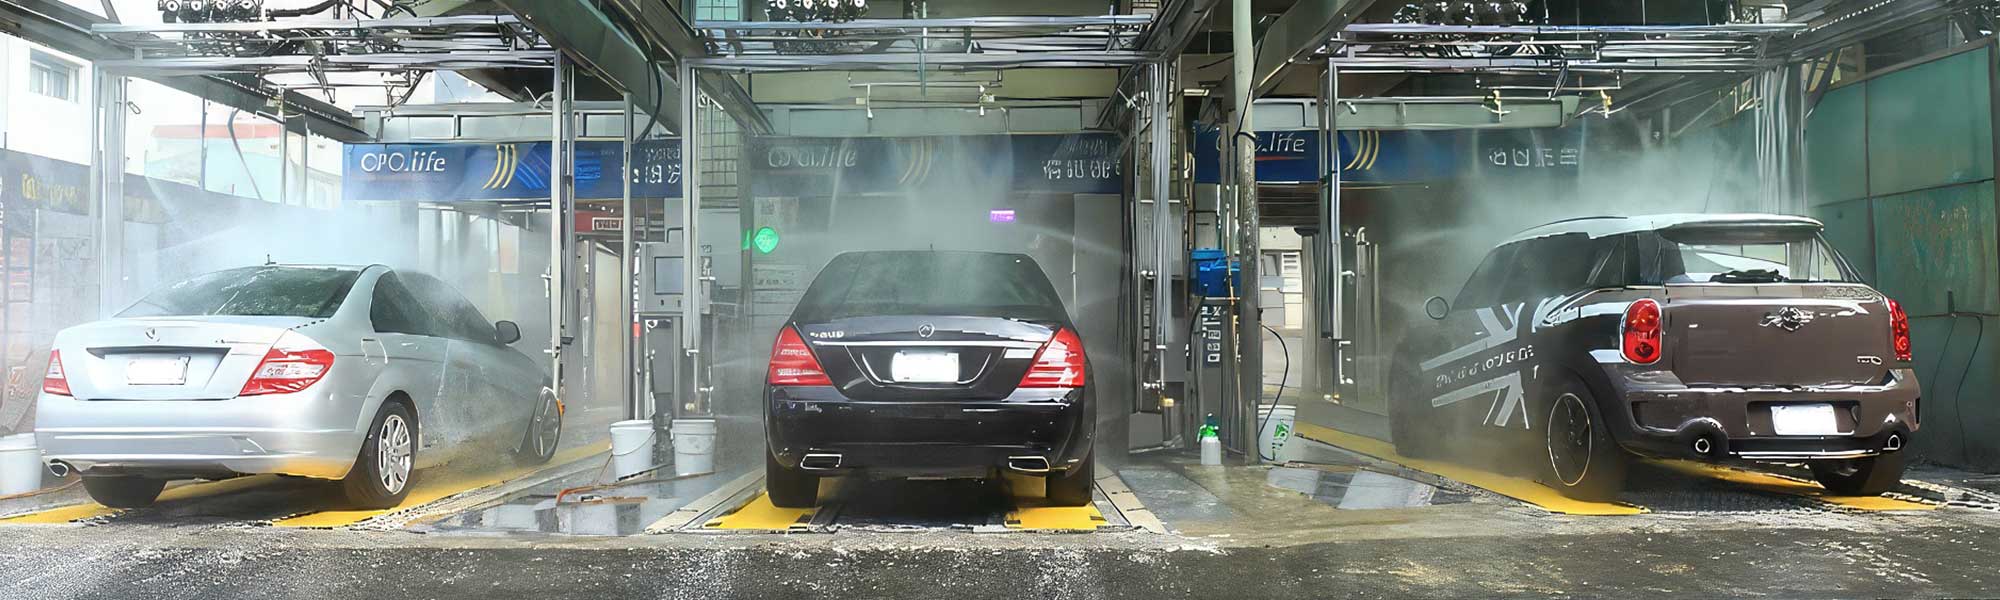 Válvulas na lavagem de carros self-service: melhorando desempenho e resultados